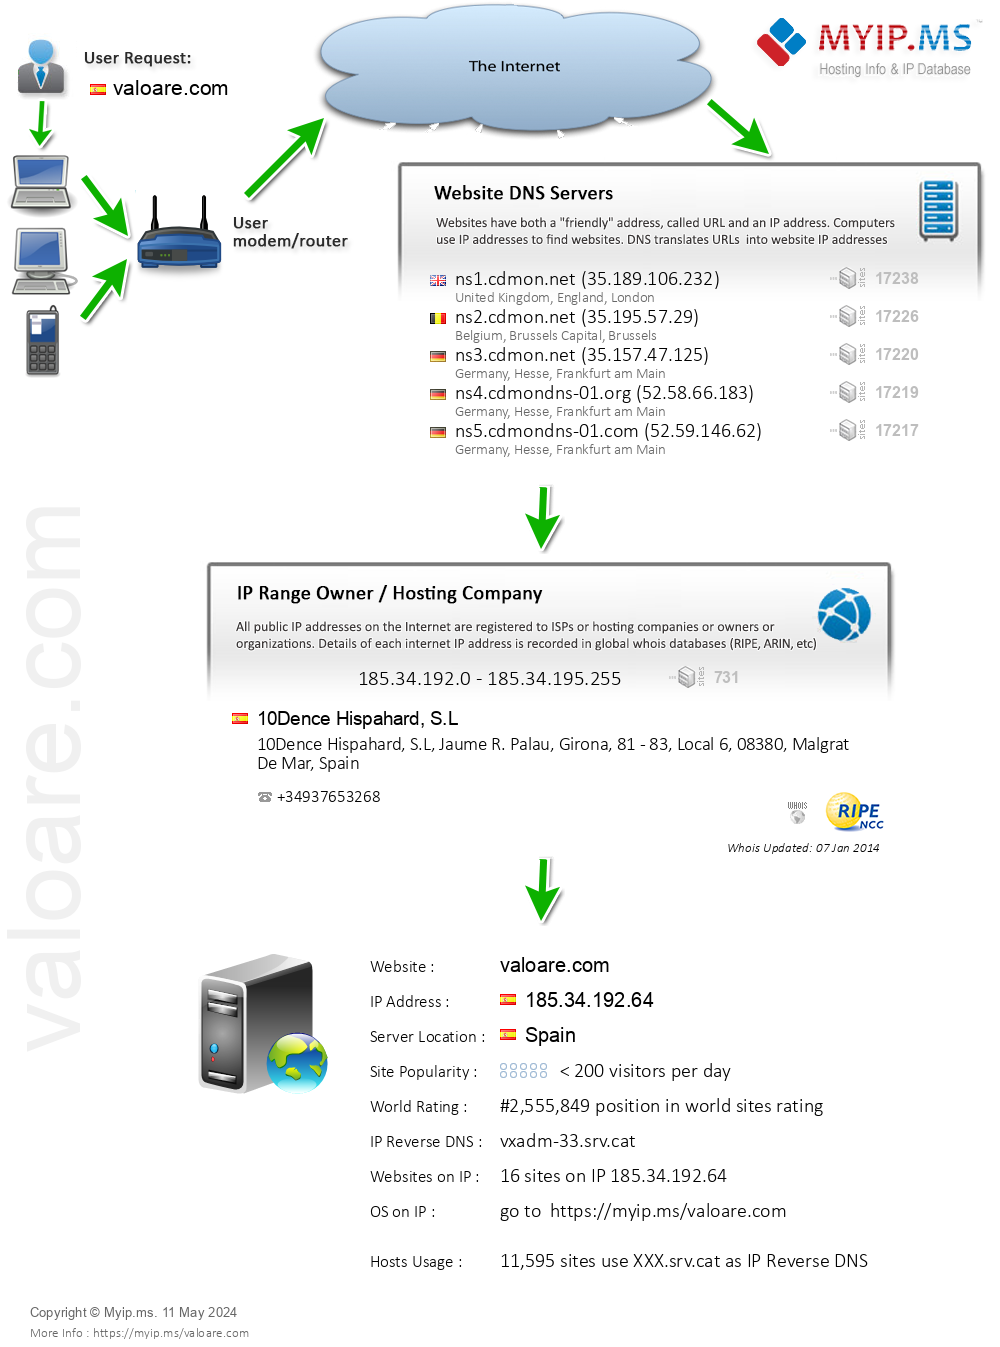 Valoare.com - Website Hosting Visual IP Diagram